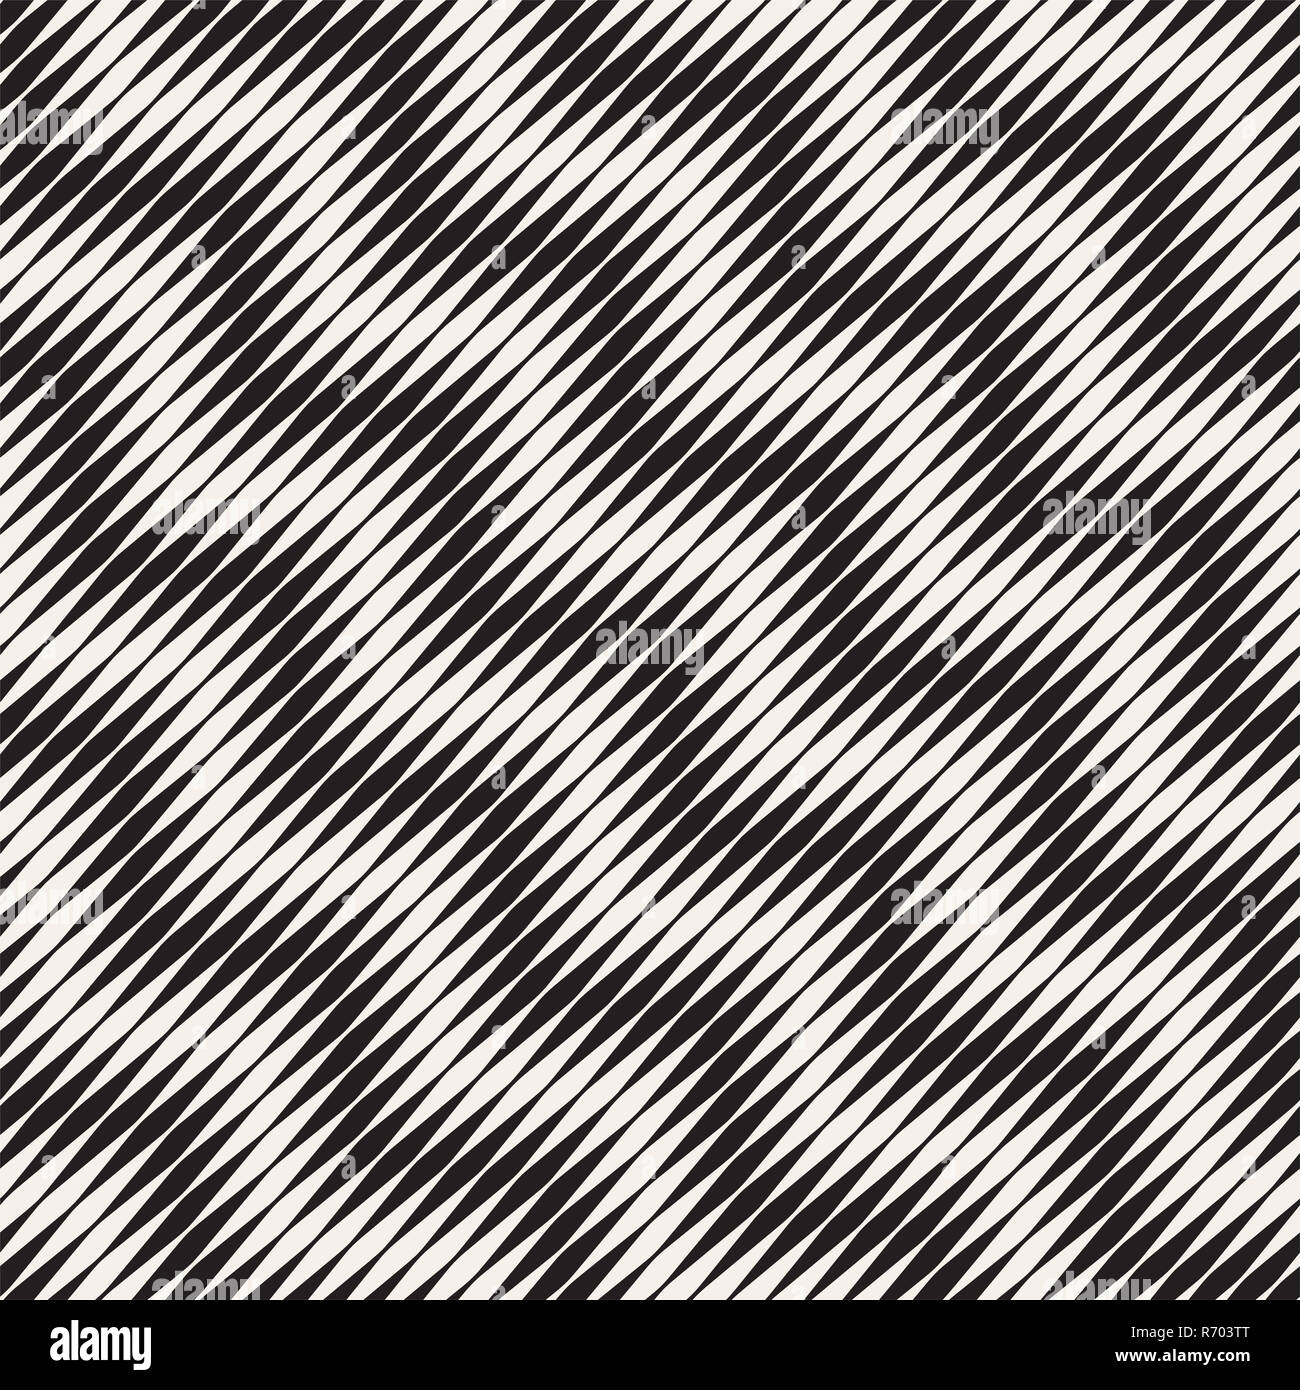 Nahtlose welligkeit Muster. Wiederholen vektor Textur. Wellenförmige grafik hintergrund. Einfache Streifen Stockfoto